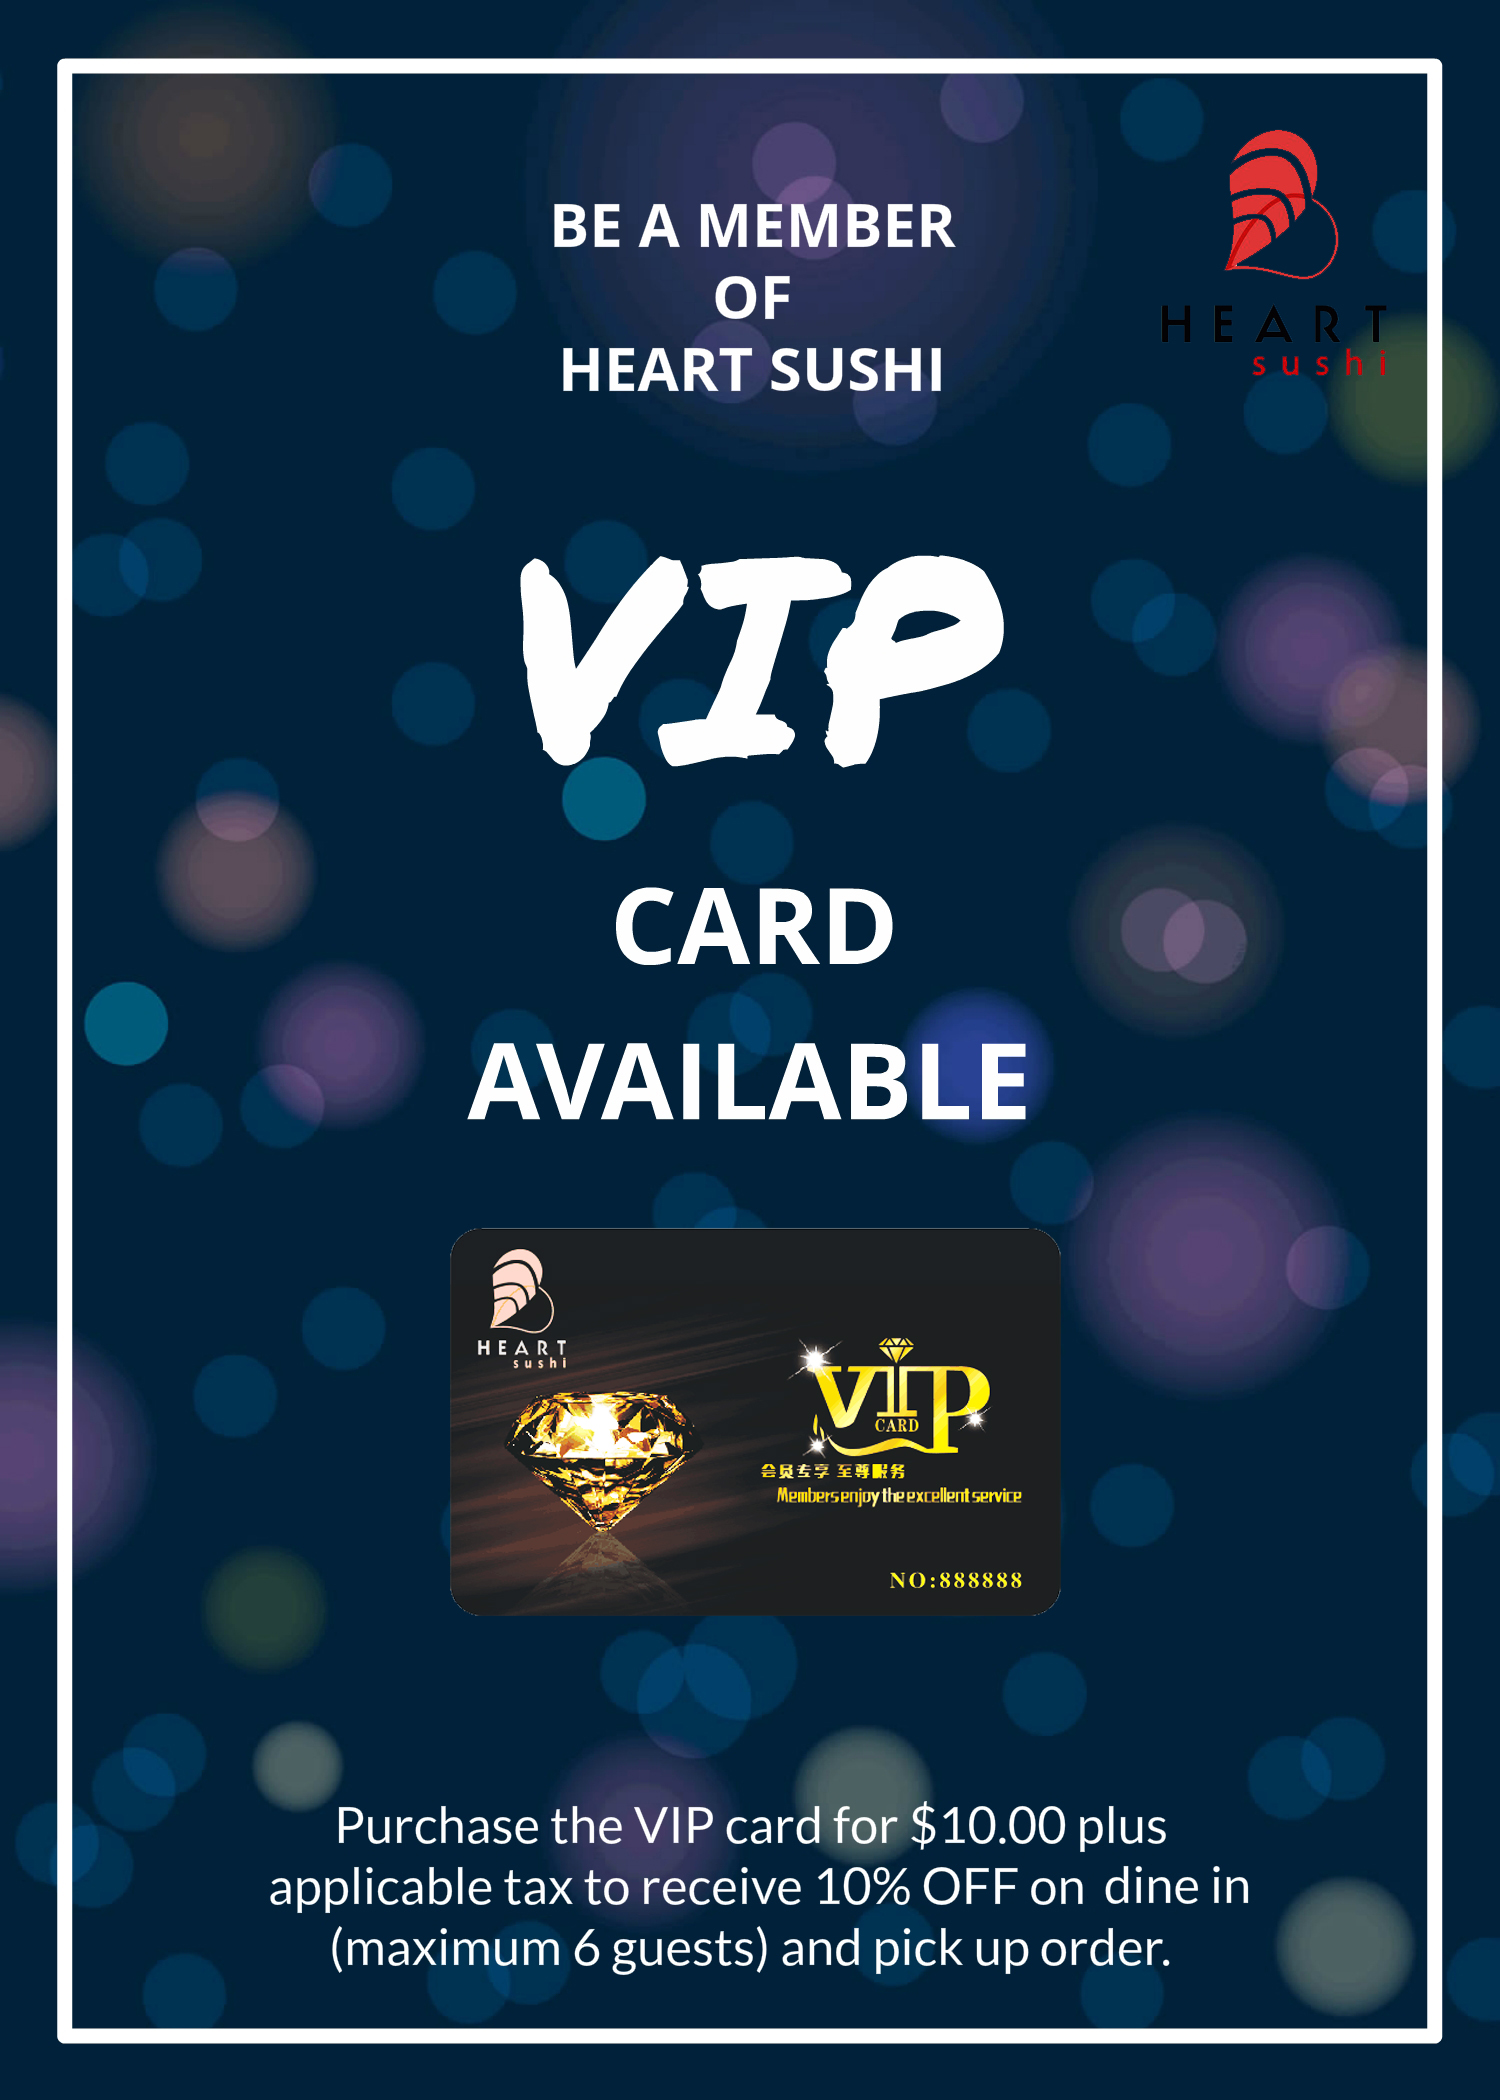 mississauga-heartsushi-vip-card.jpg